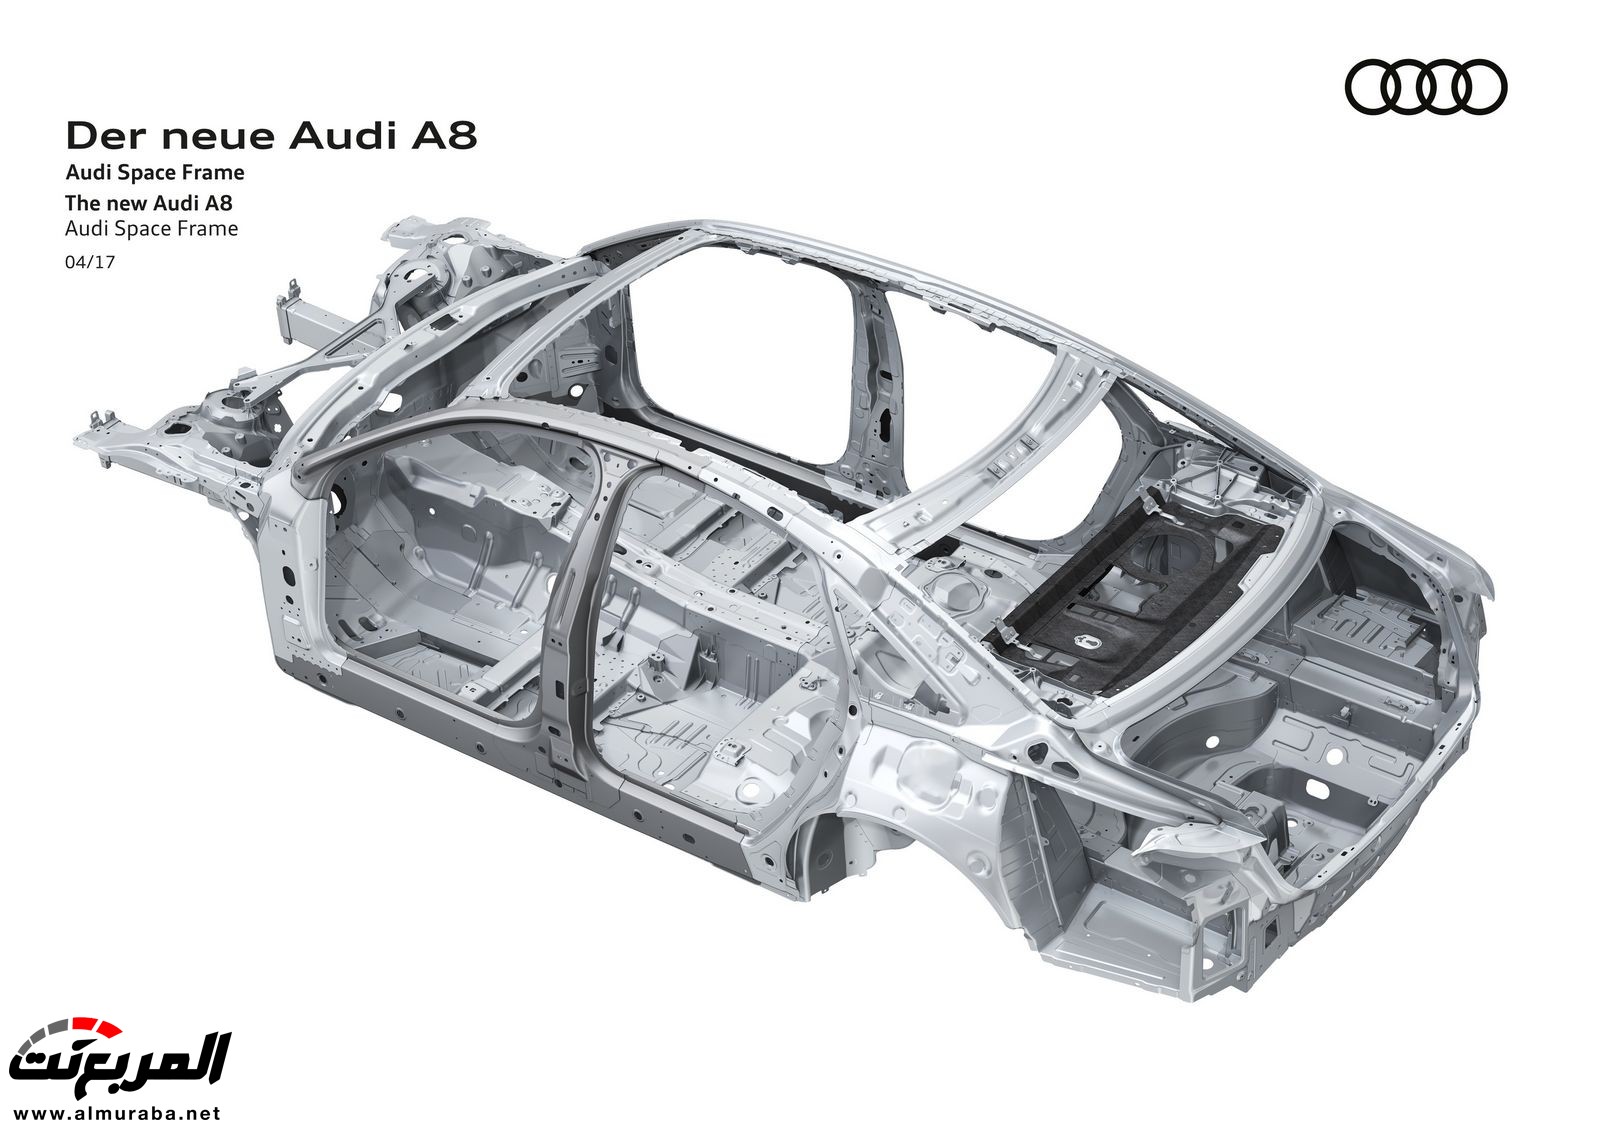 أودي A8 2018 الجديدة كلياً تكشف نفسها بتصميم وتقنيات متطورة "معلومات + 100 صورة" Audi A8 62